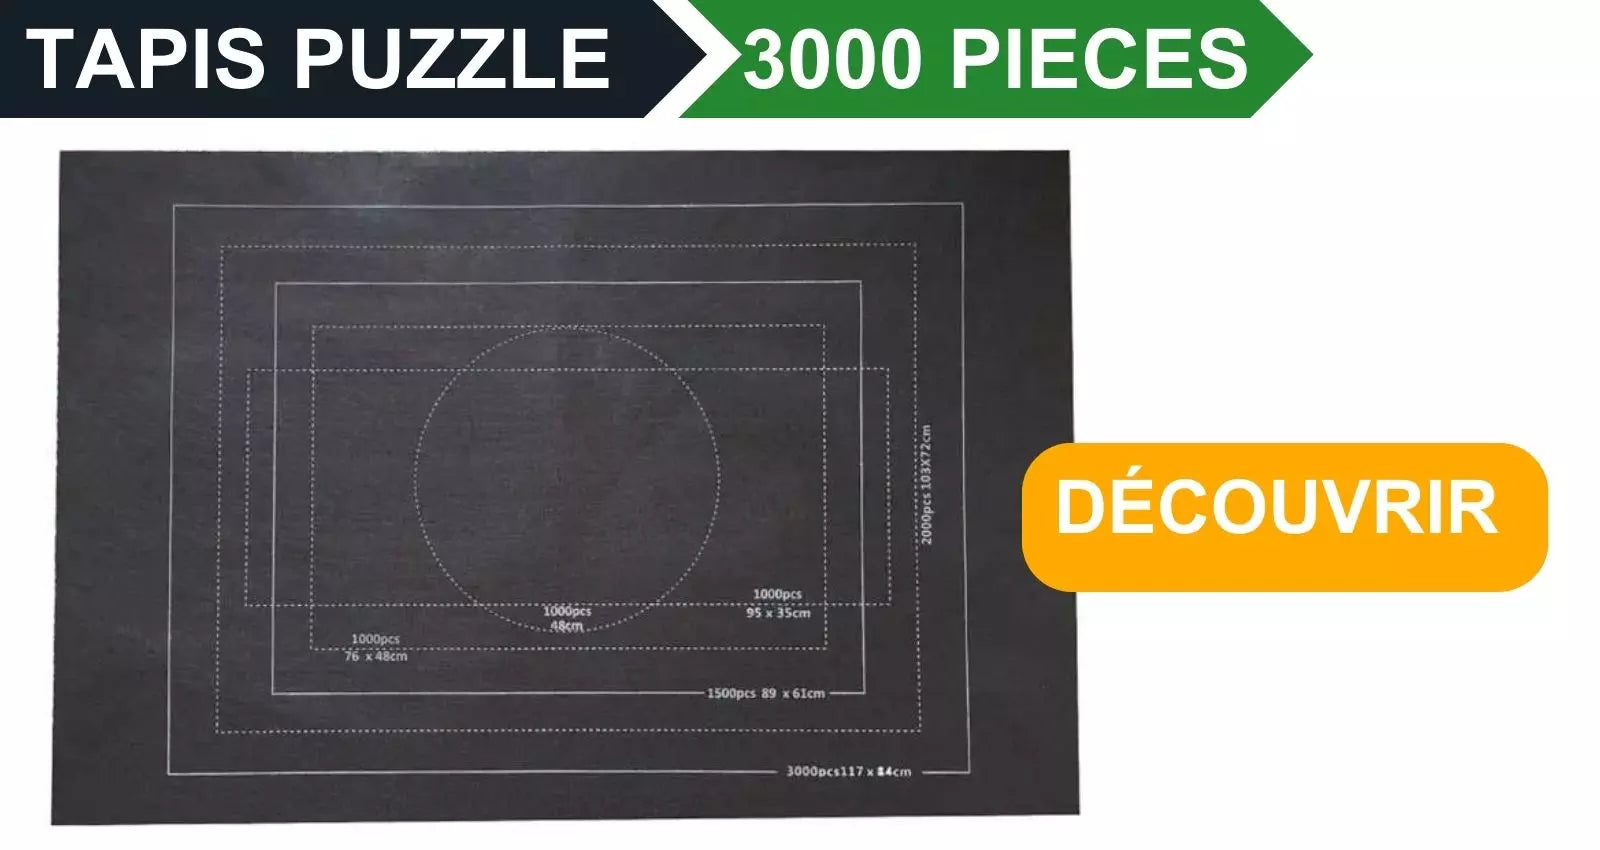 Comment fonctionne un tapis puzzle ? Et un tapis de puzzle est-il utile ?